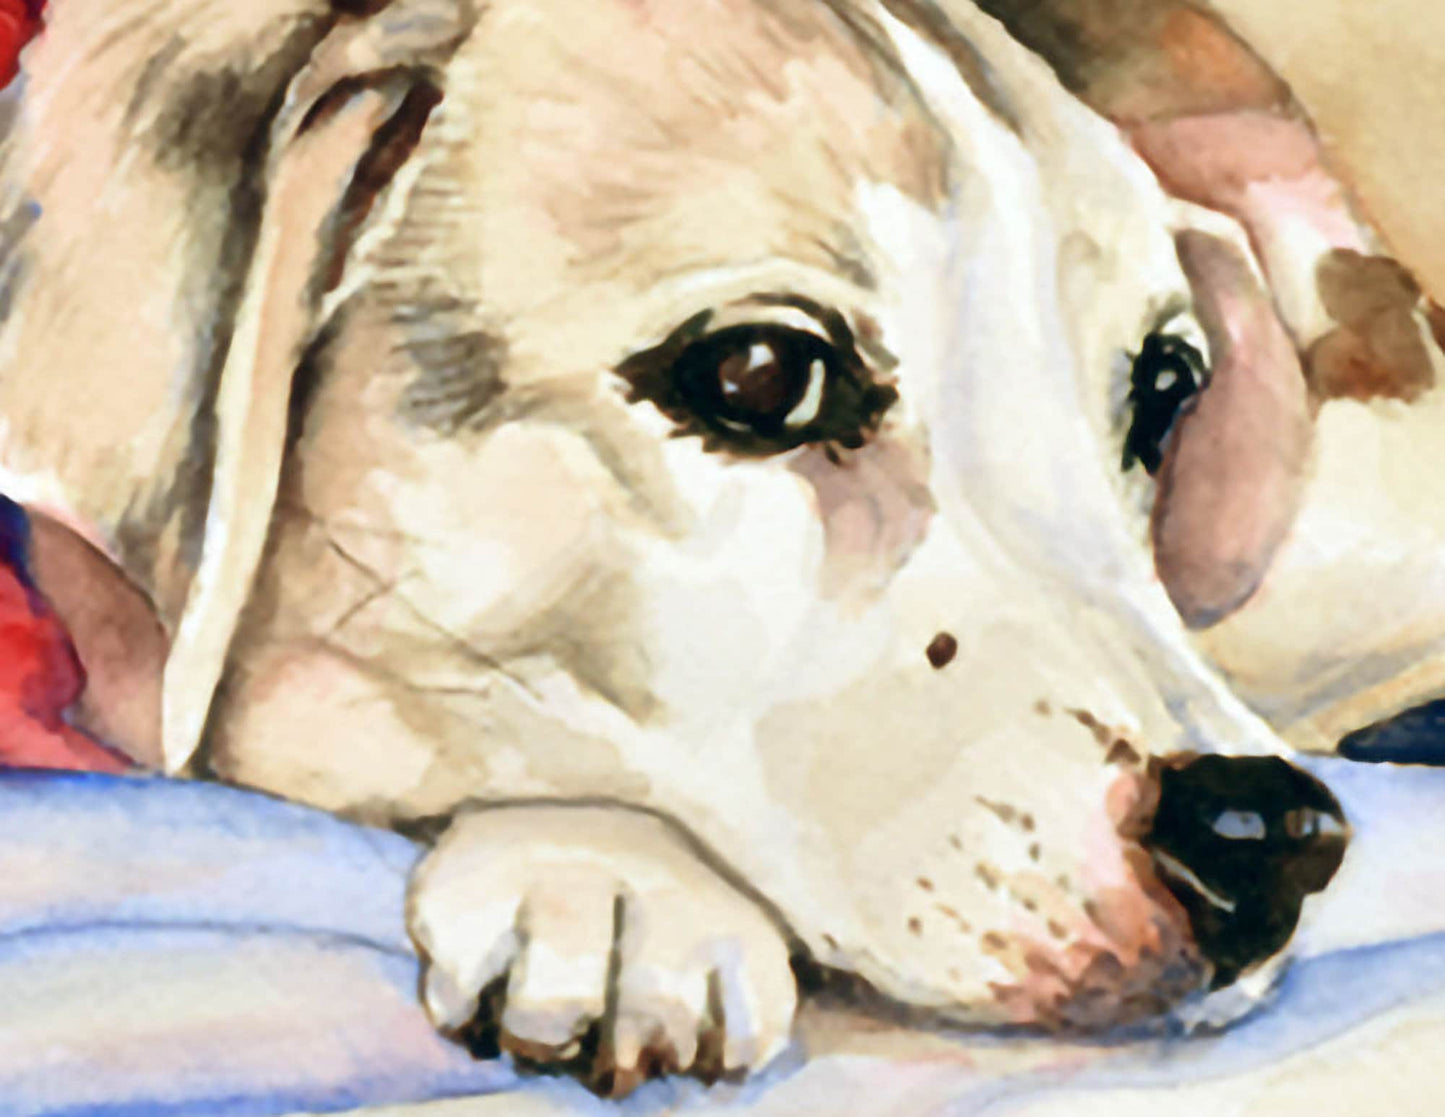 Hand Painted, Custom Watercolor Pet Portrait Commission